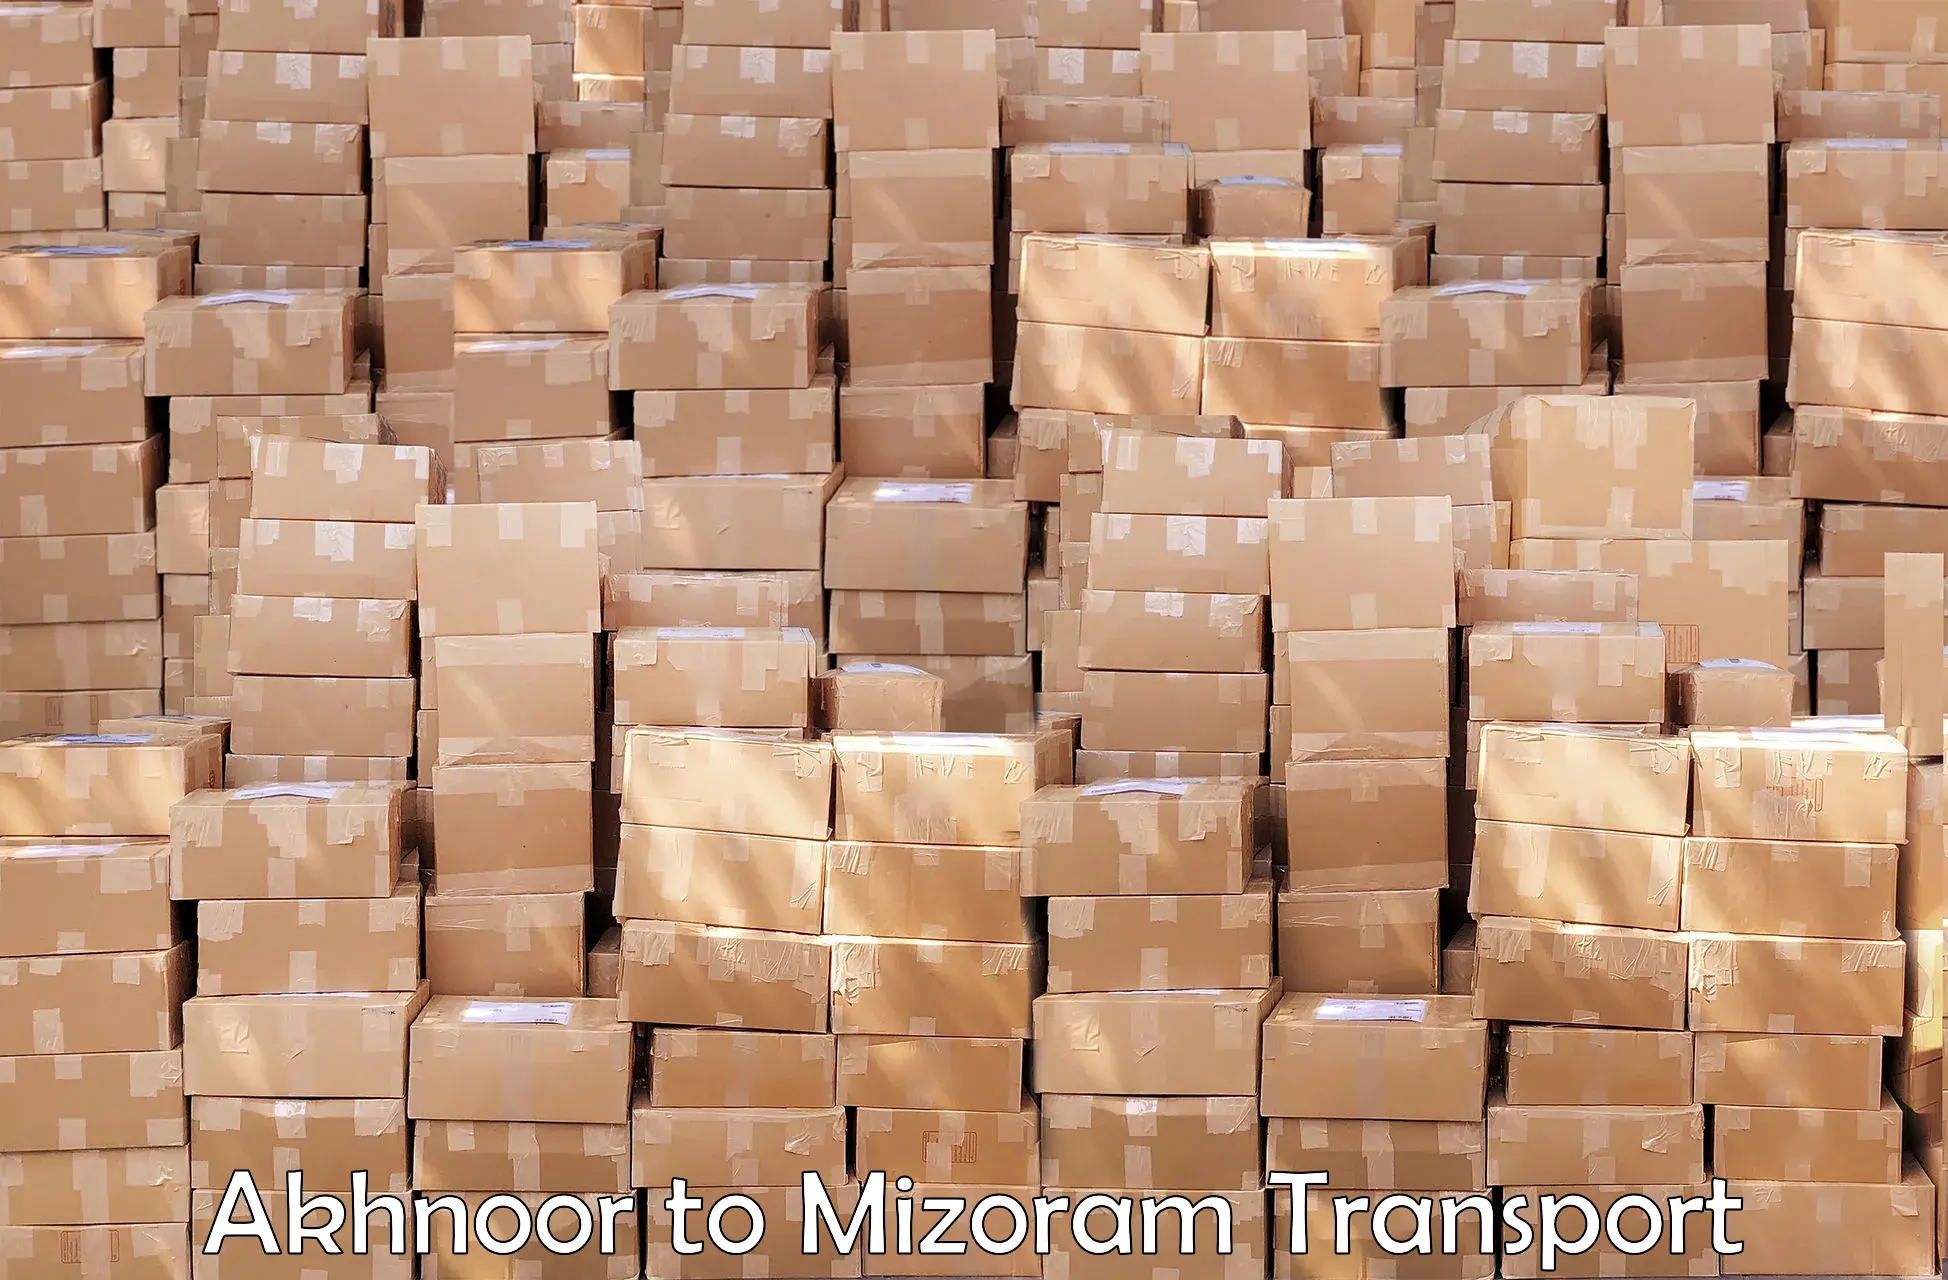 Road transport services Akhnoor to Mizoram